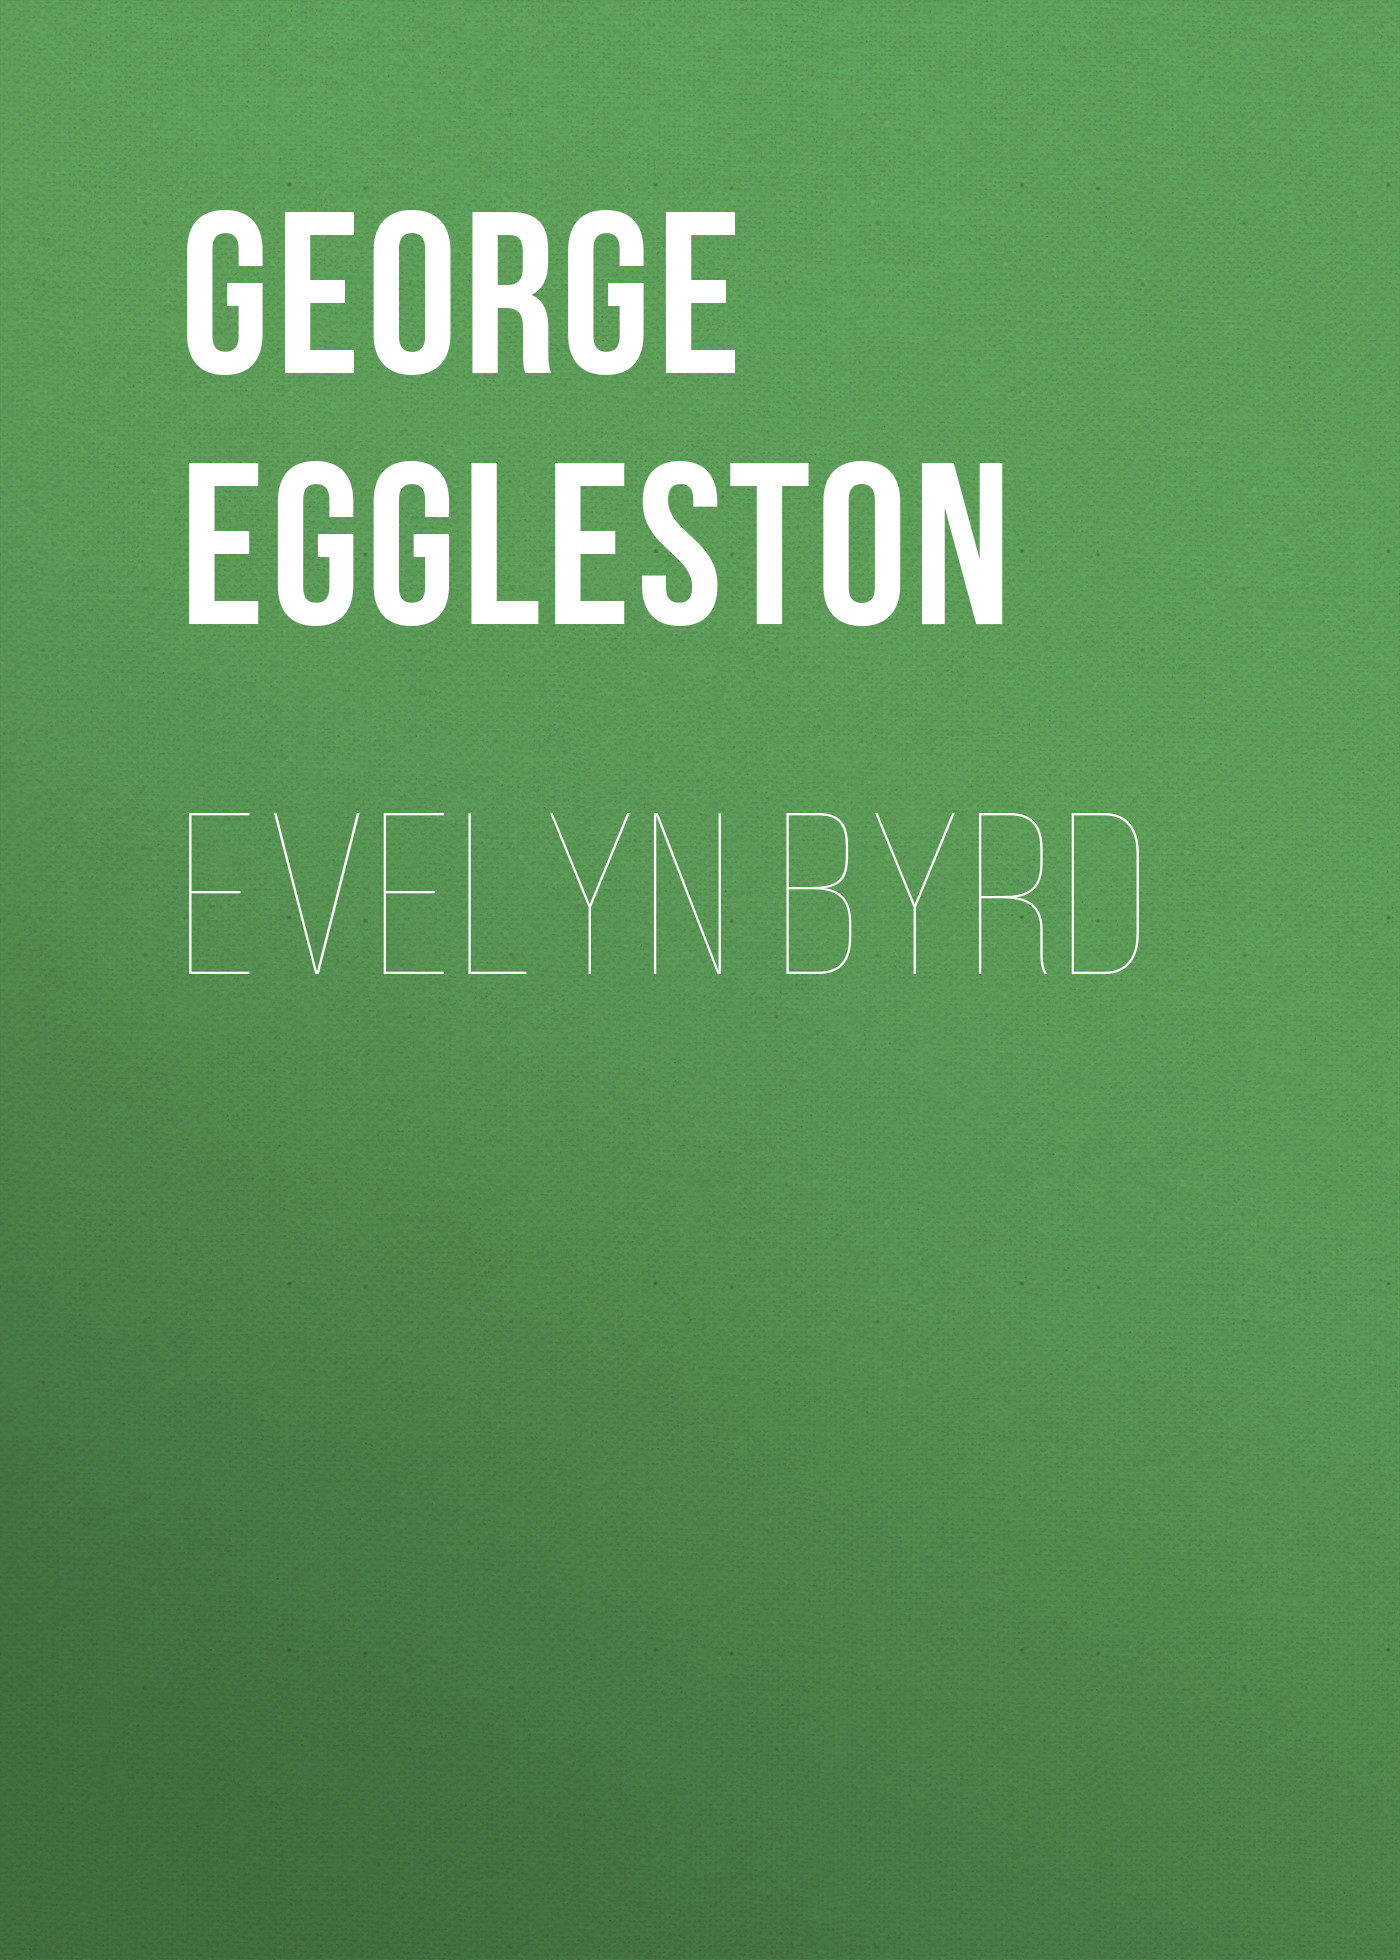 Книга Evelyn Byrd из серии , созданная George Eggleston, может относится к жанру Зарубежная классика. Стоимость электронной книги Evelyn Byrd с идентификатором 23160203 составляет 5.99 руб.